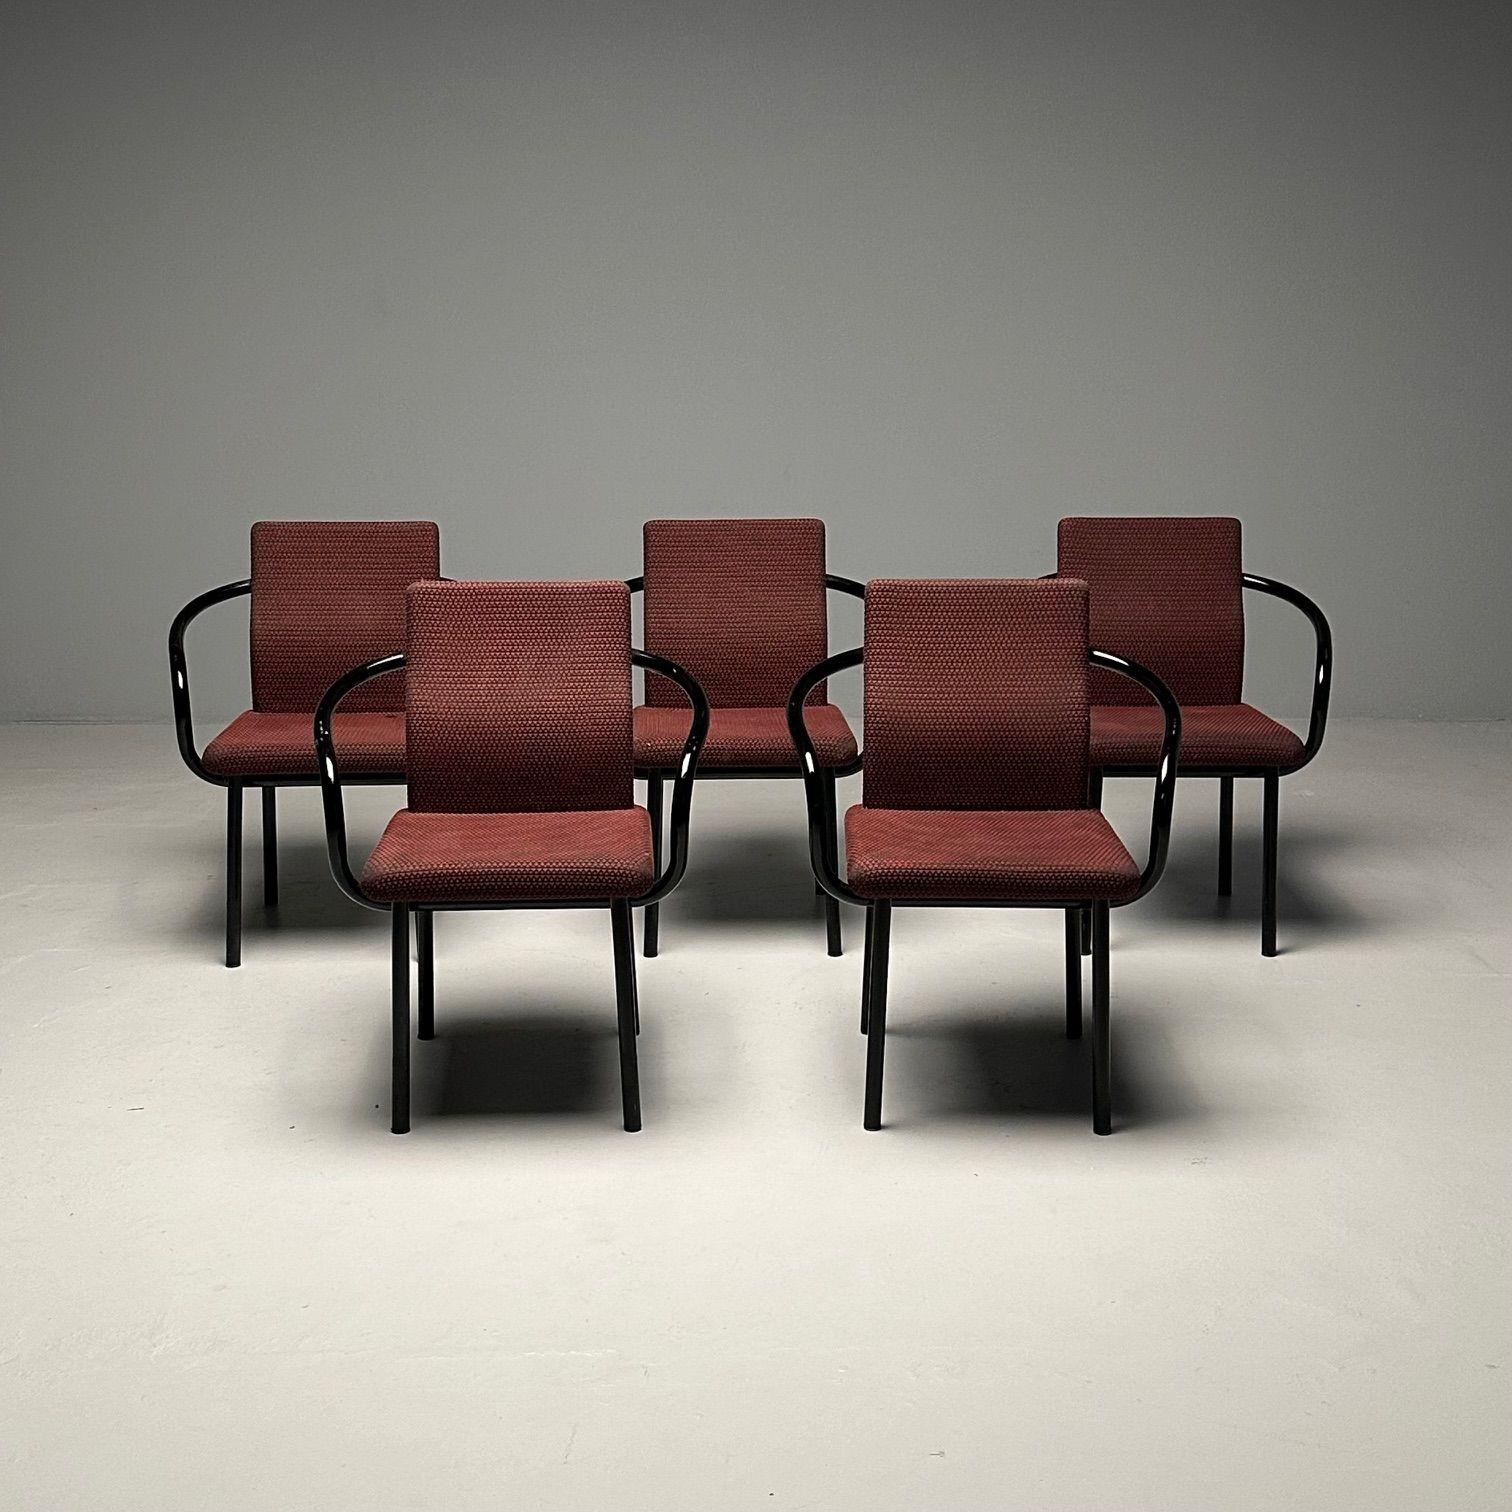 Ettore Sottsass, Knoll, fauteuils mandarins mi-siècle modernes, Italie, années 1990

Ensemble de cinq fauteuils modernes du milieu du siècle conçus par Ettore Sottsass pour Knoll en Italie, 1986. Les accoudoirs sont constitués d'une seule pièce de